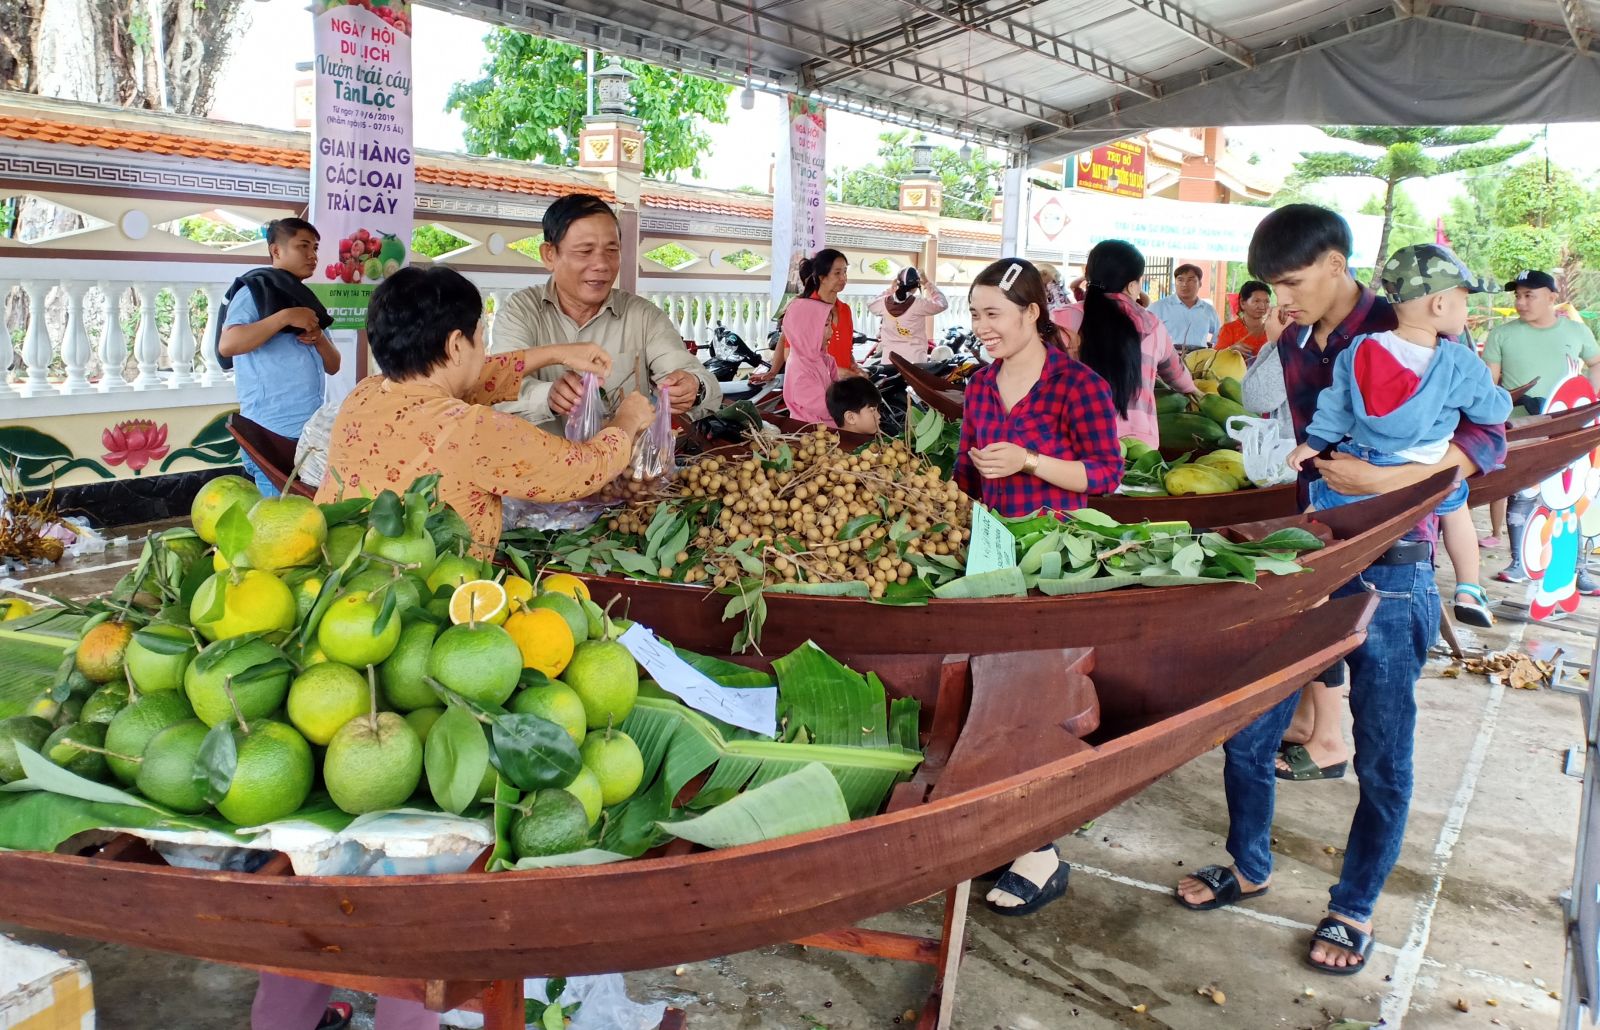 Lễ hội là dịp để các nhà vườn Tân Lộc giới thiệu những trái cây tiêu biểu của địa phương đến du khách gần xa.